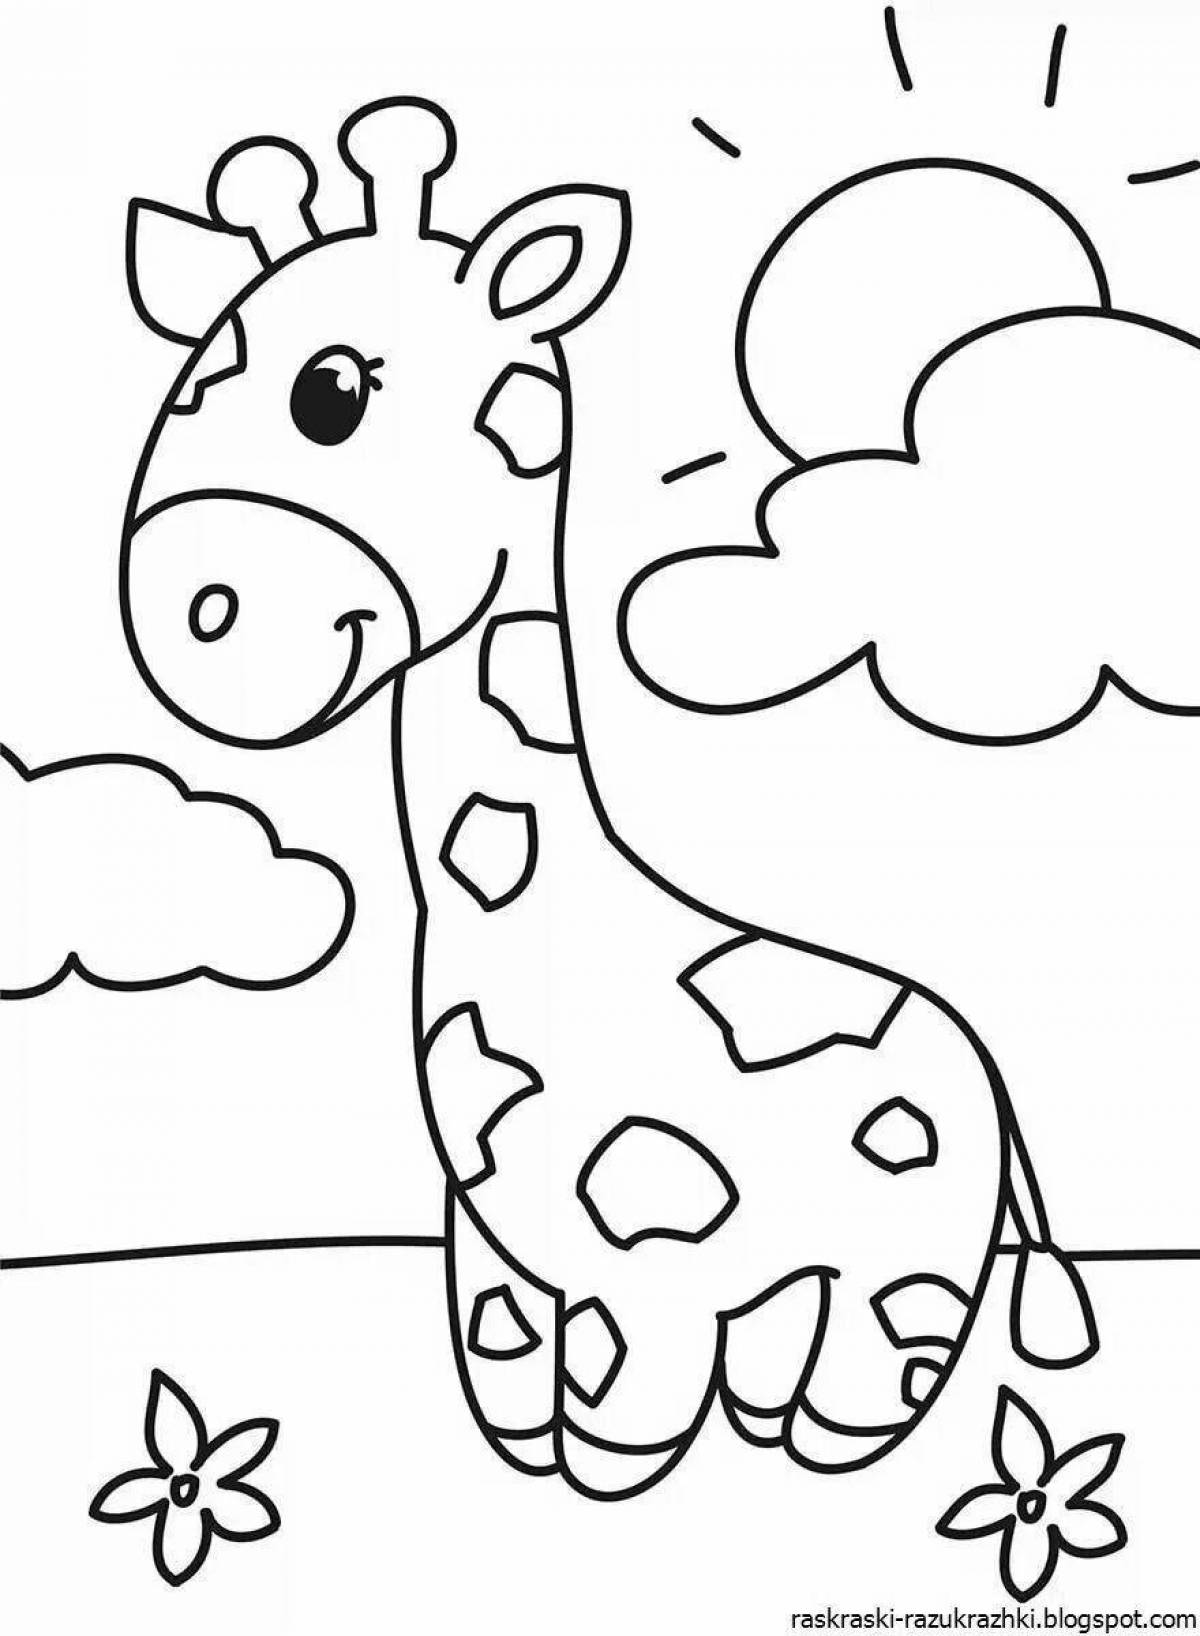 Яркие раскраски для детей 3-4 лет: простые животные